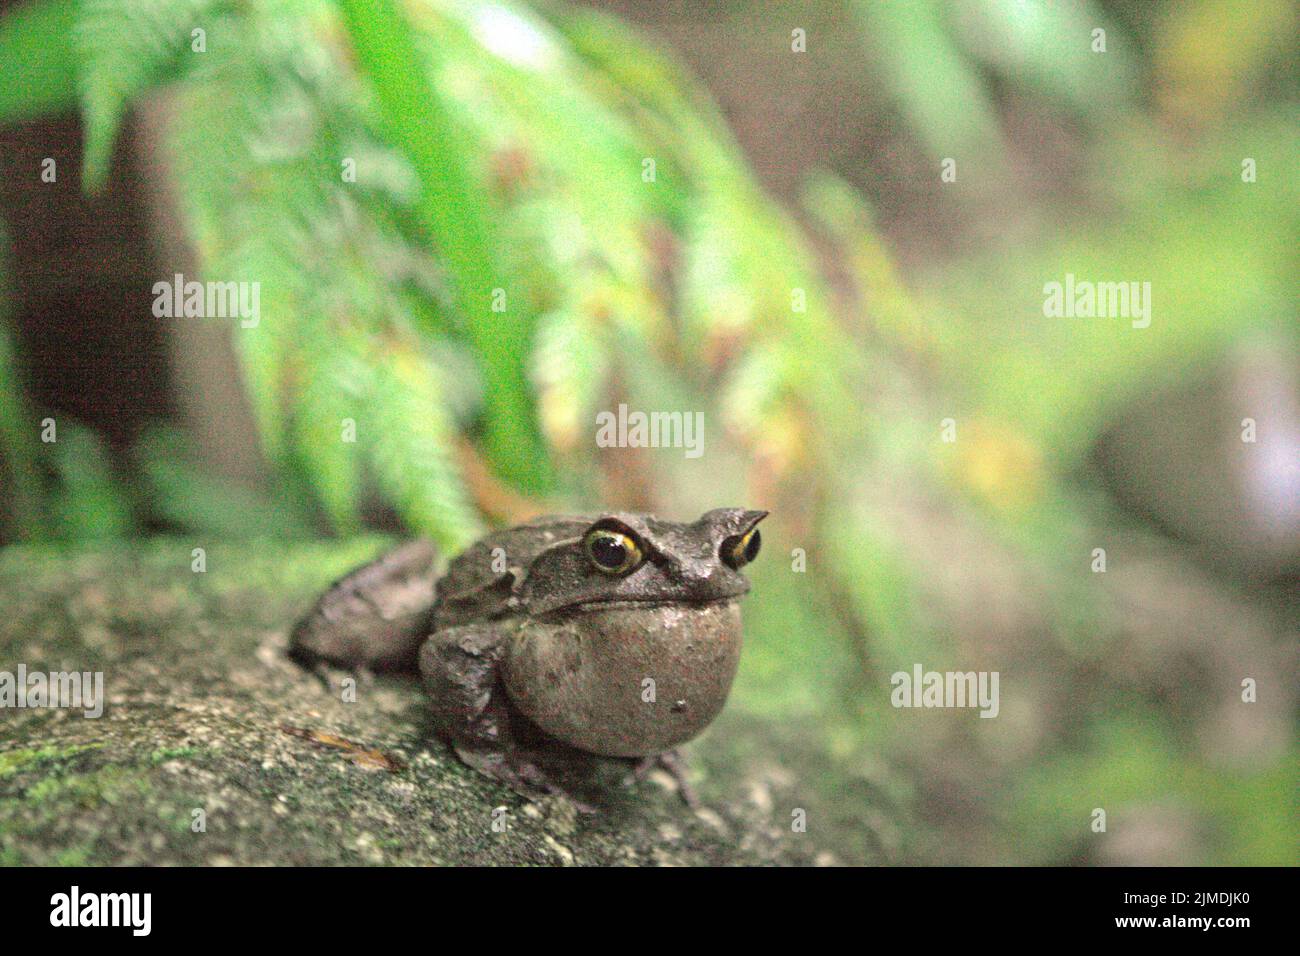 Grenouille à cornes malaisiennes, également connue sous le nom de grenouille à cornes longues ou grenouille à feuilles malaisiennes (Megophyris nasuta) au jardin botanique du Mont Kinabalu, dans le parc Kinabalu, Ranau, Sabah, Malaisie. Banque D'Images